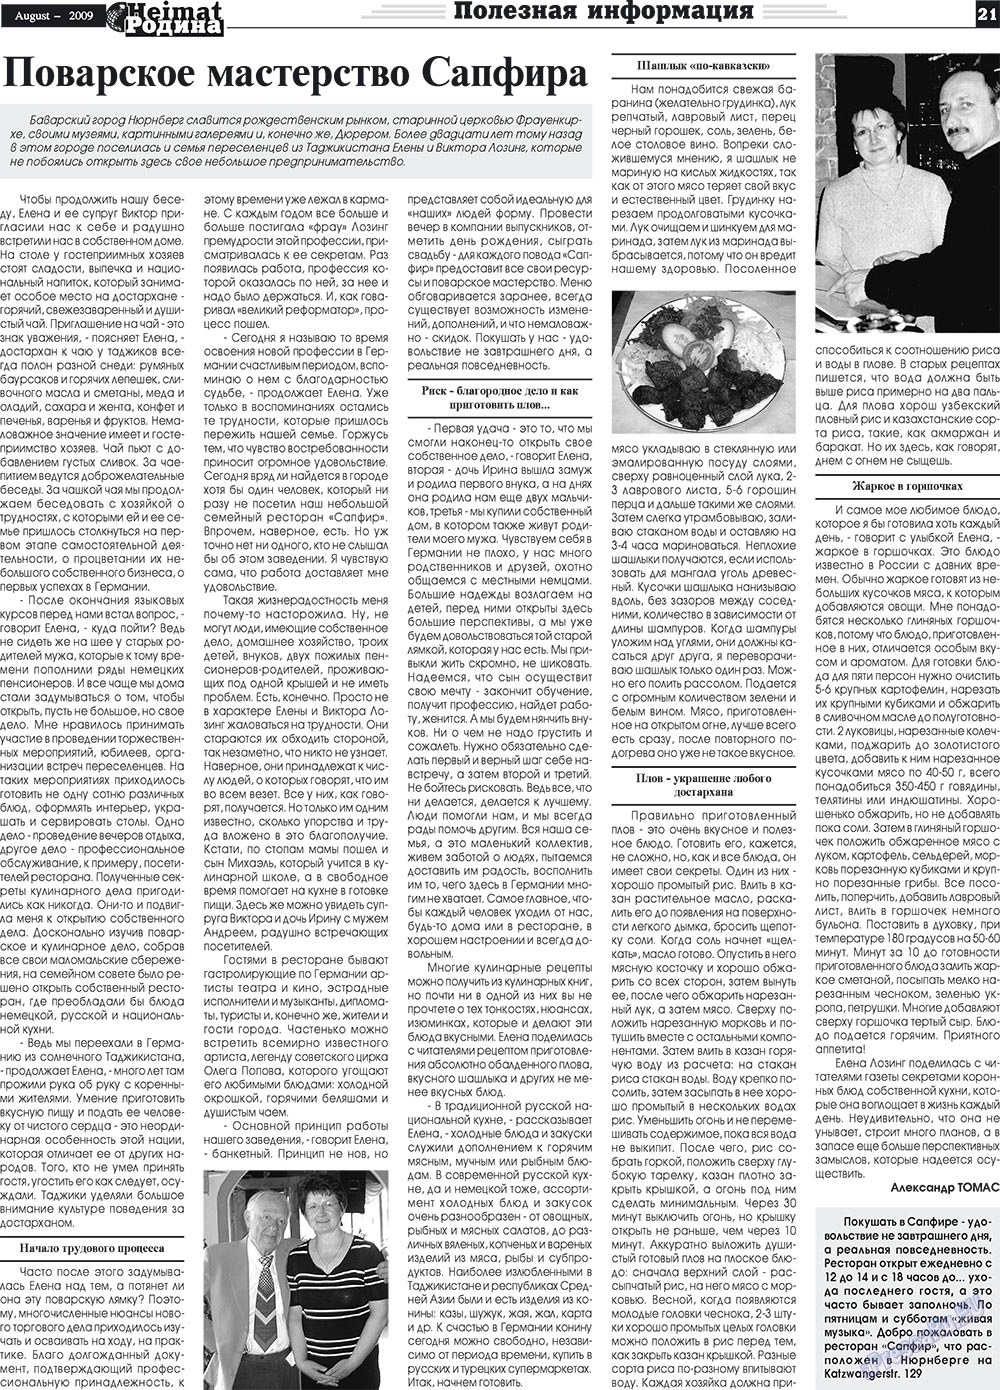 Heimat-Родина (газета). 2009 год, номер 8, стр. 21